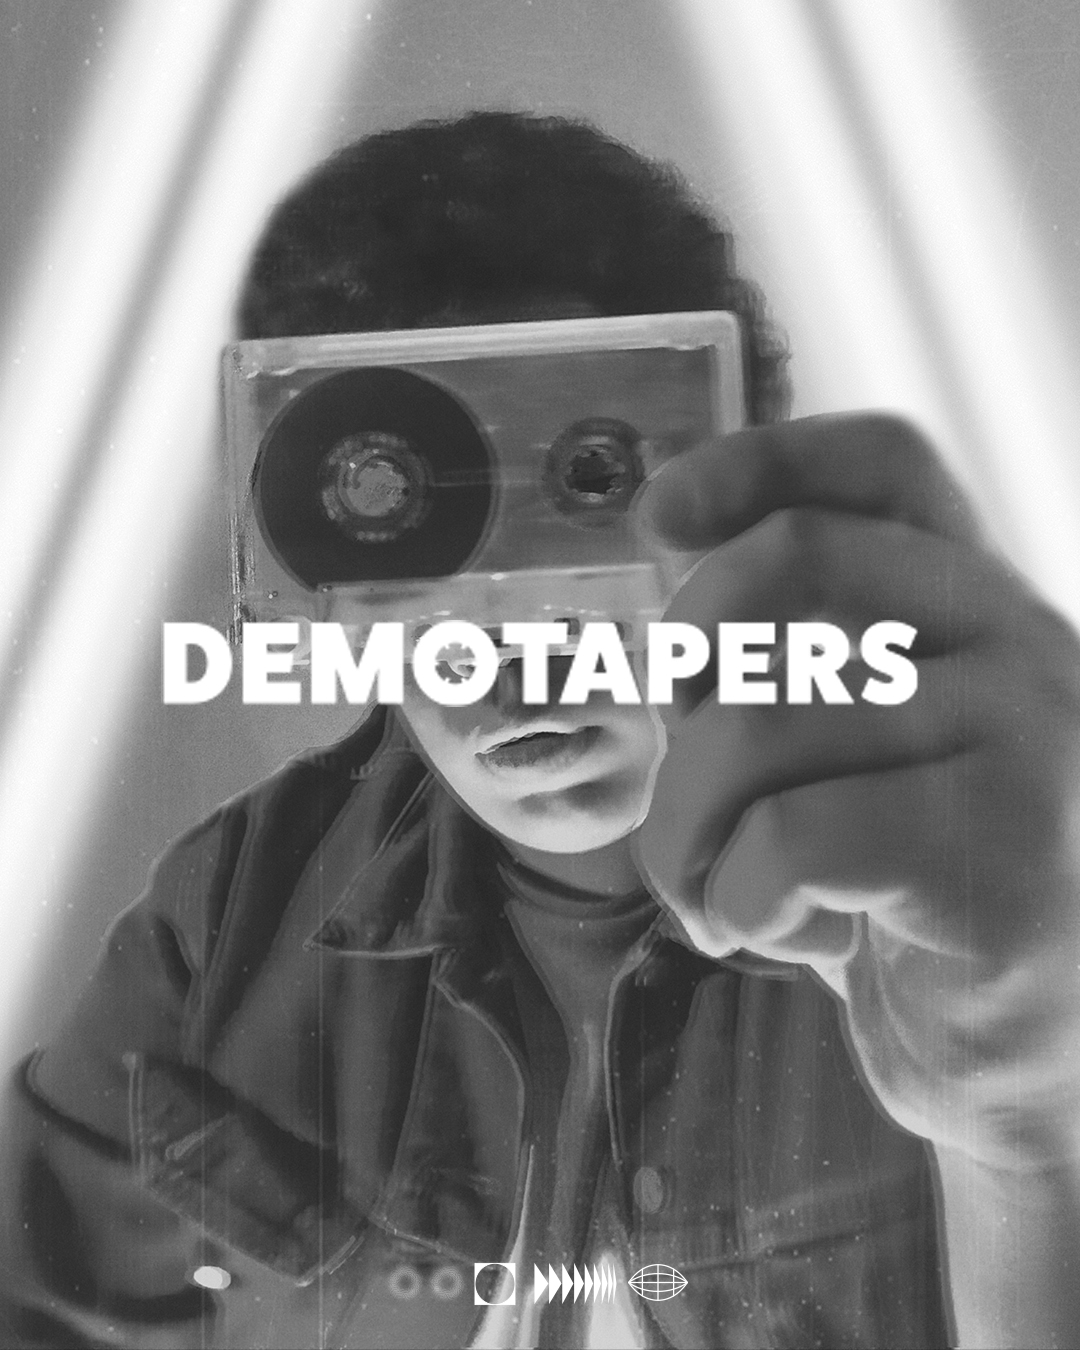 Demotapers